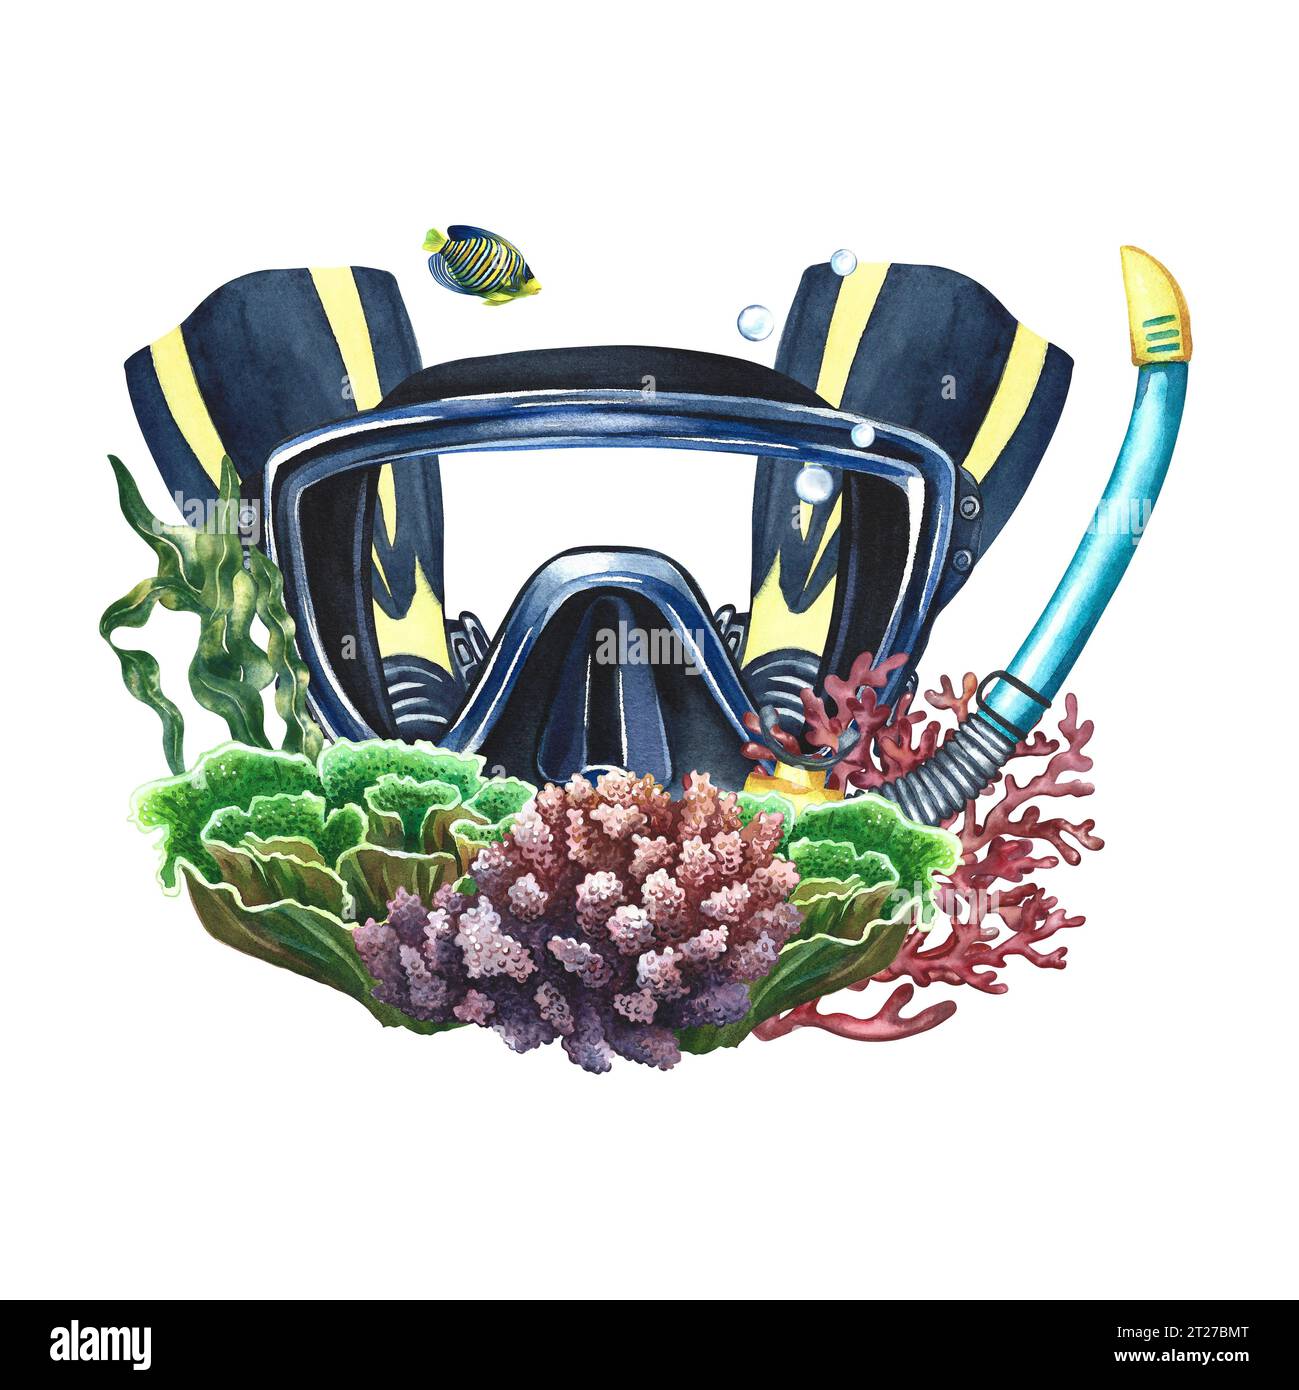 Taucherausrüstung. Tauchermaske mit Flossen, Schnorchel und Korallen. Handgezeichnet in Aquarell. Unterwasserfahrt. Für die Gestaltung von Etiketten, Postkarten und b Stockfoto